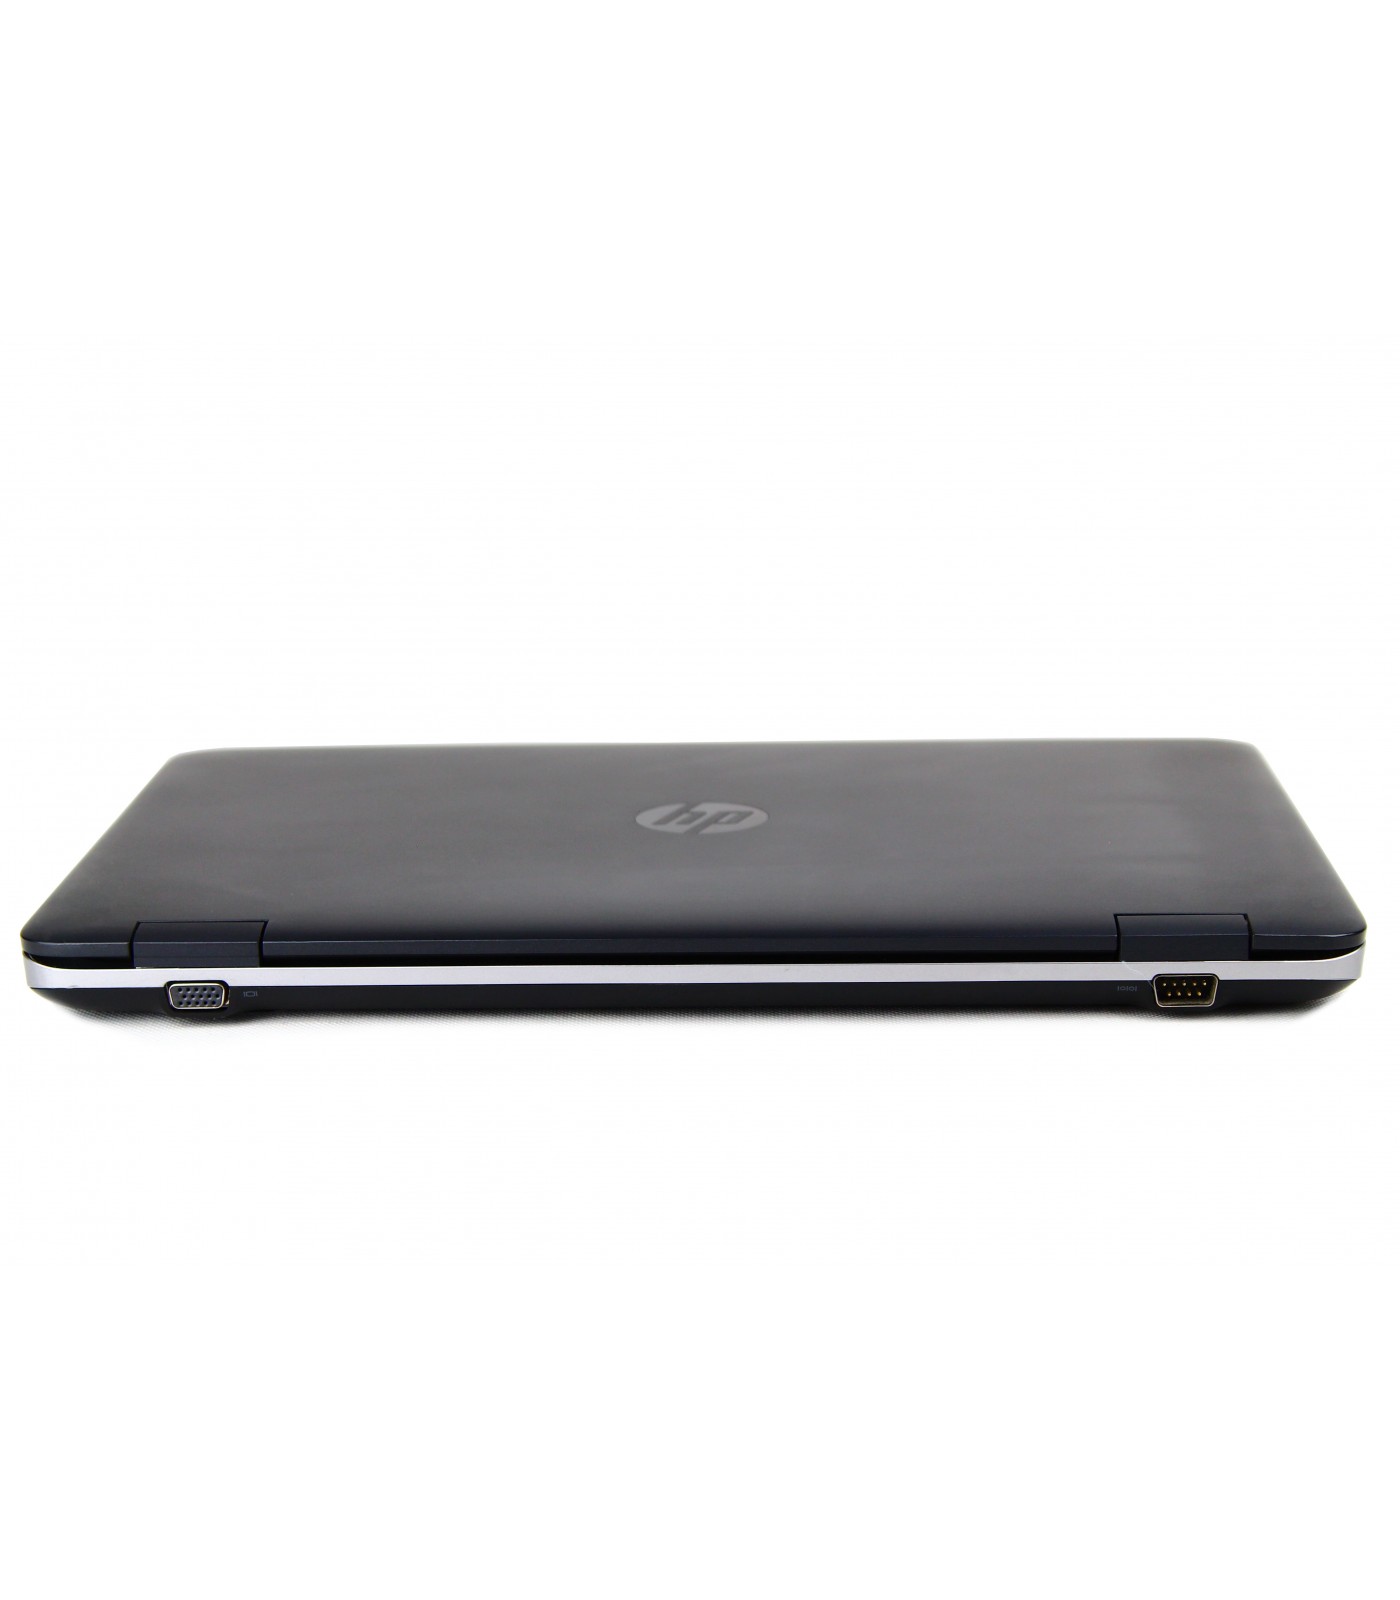 Poleasingowy laptop HP ProBook 650 G2 i5-6300U w klasie A